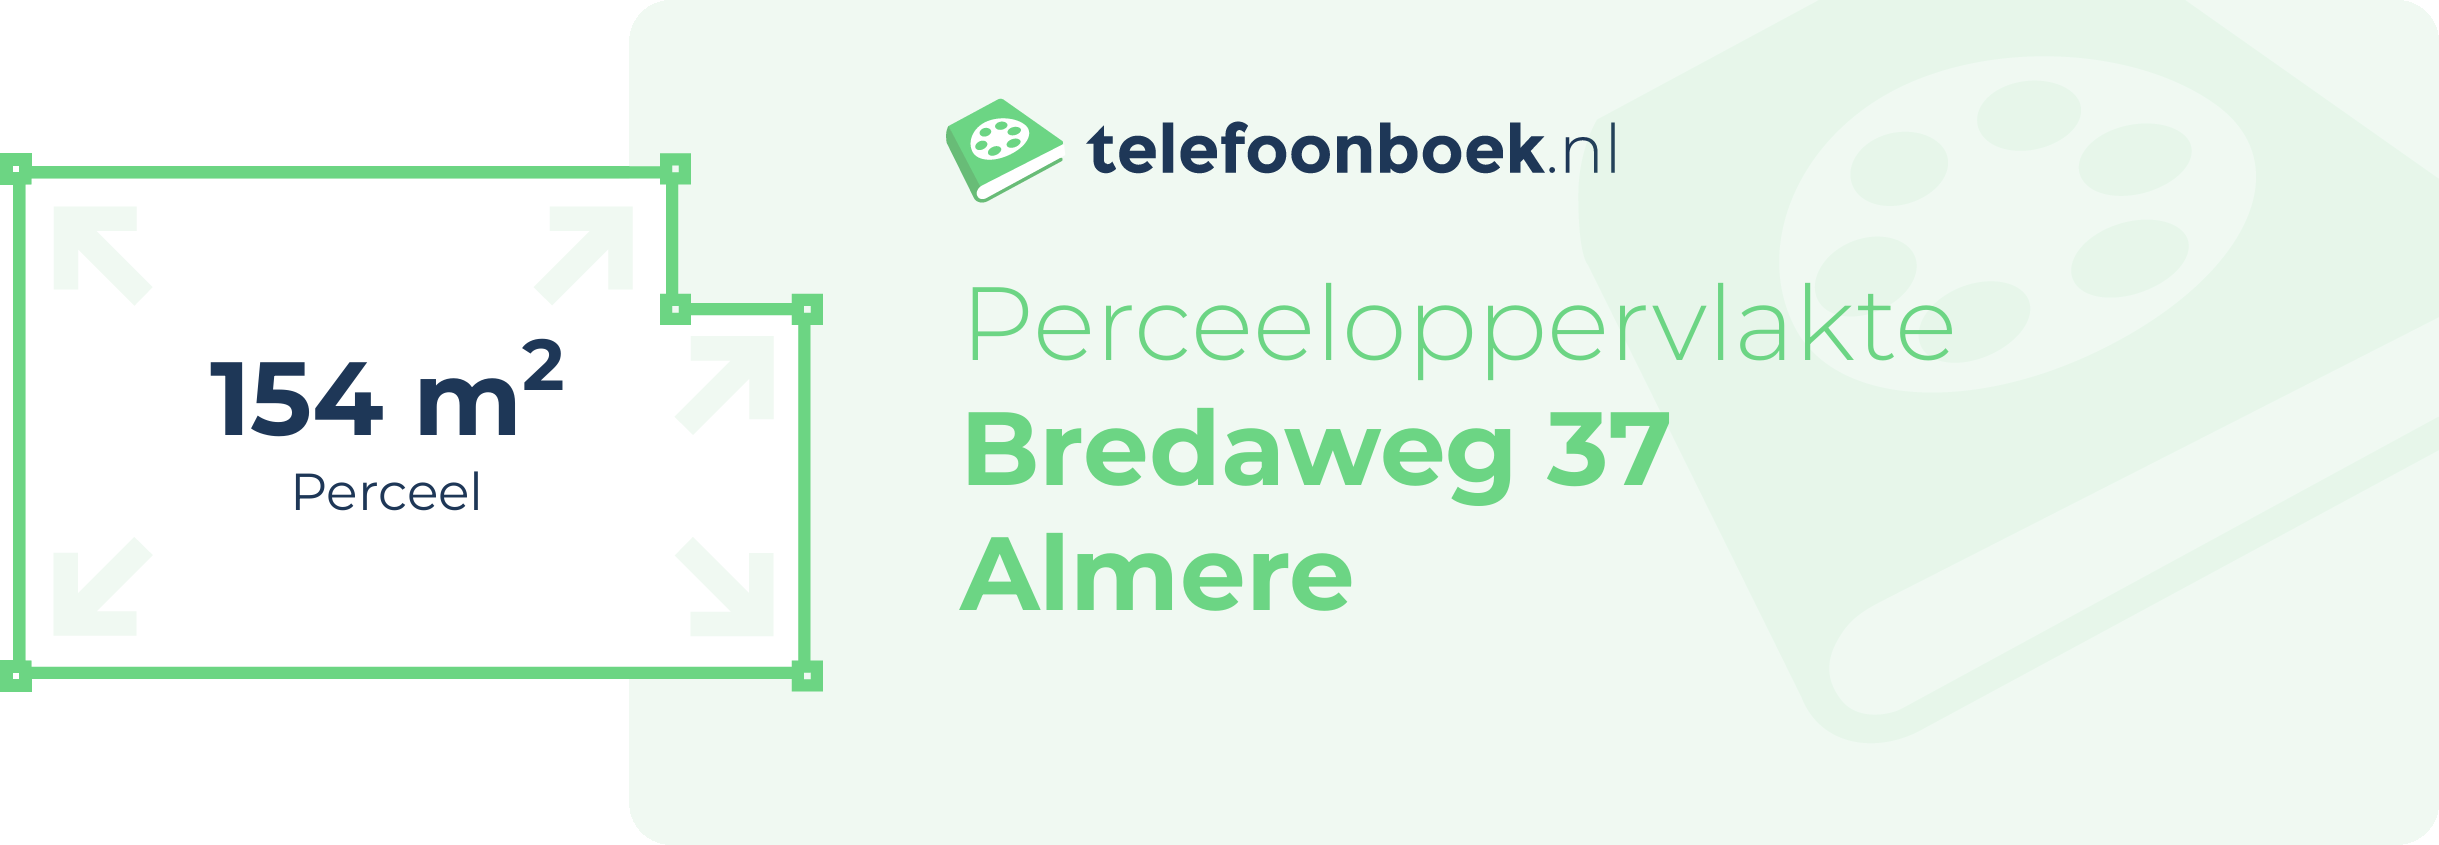 Perceeloppervlakte Bredaweg 37 Almere